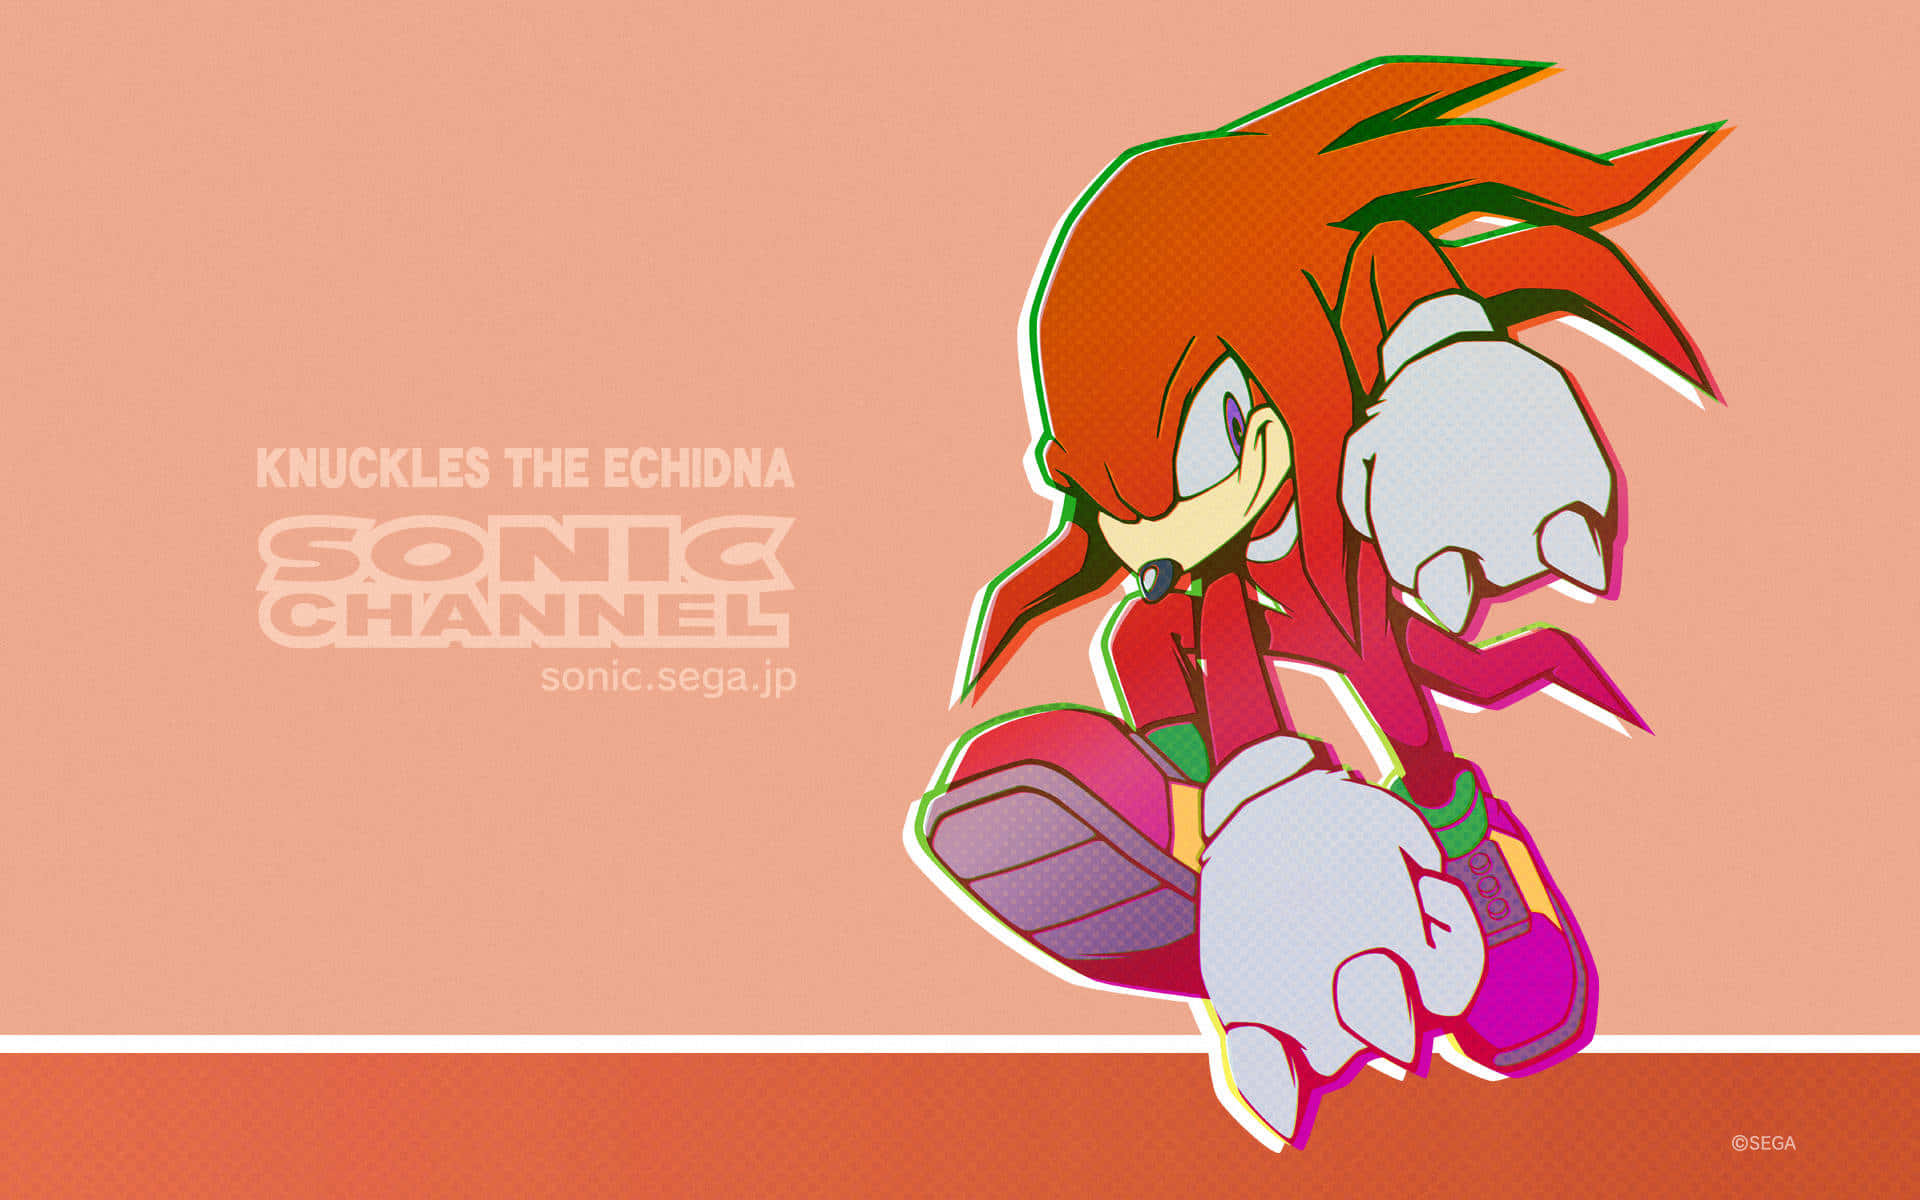 Knucklesthe Echidna, En Favoritkaraktär Bland Fans Från Sonic The Hedgehog-serien. Wallpaper